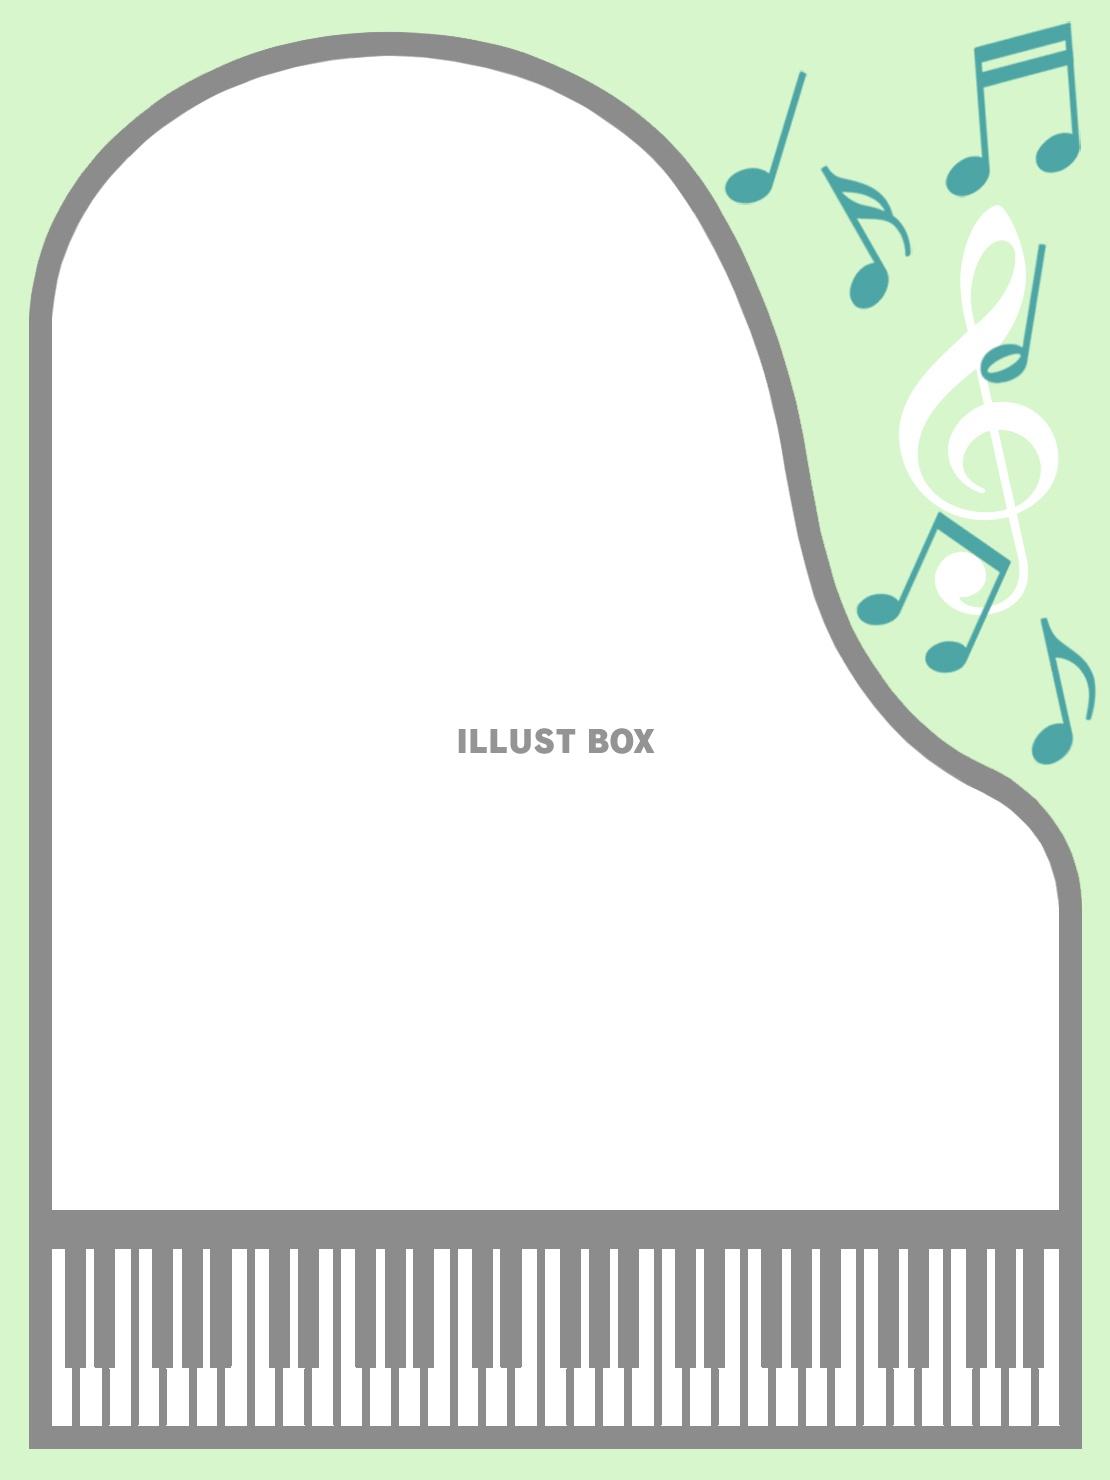 無料イラスト ピアノと音符のフレーム音楽飾り枠イラスト